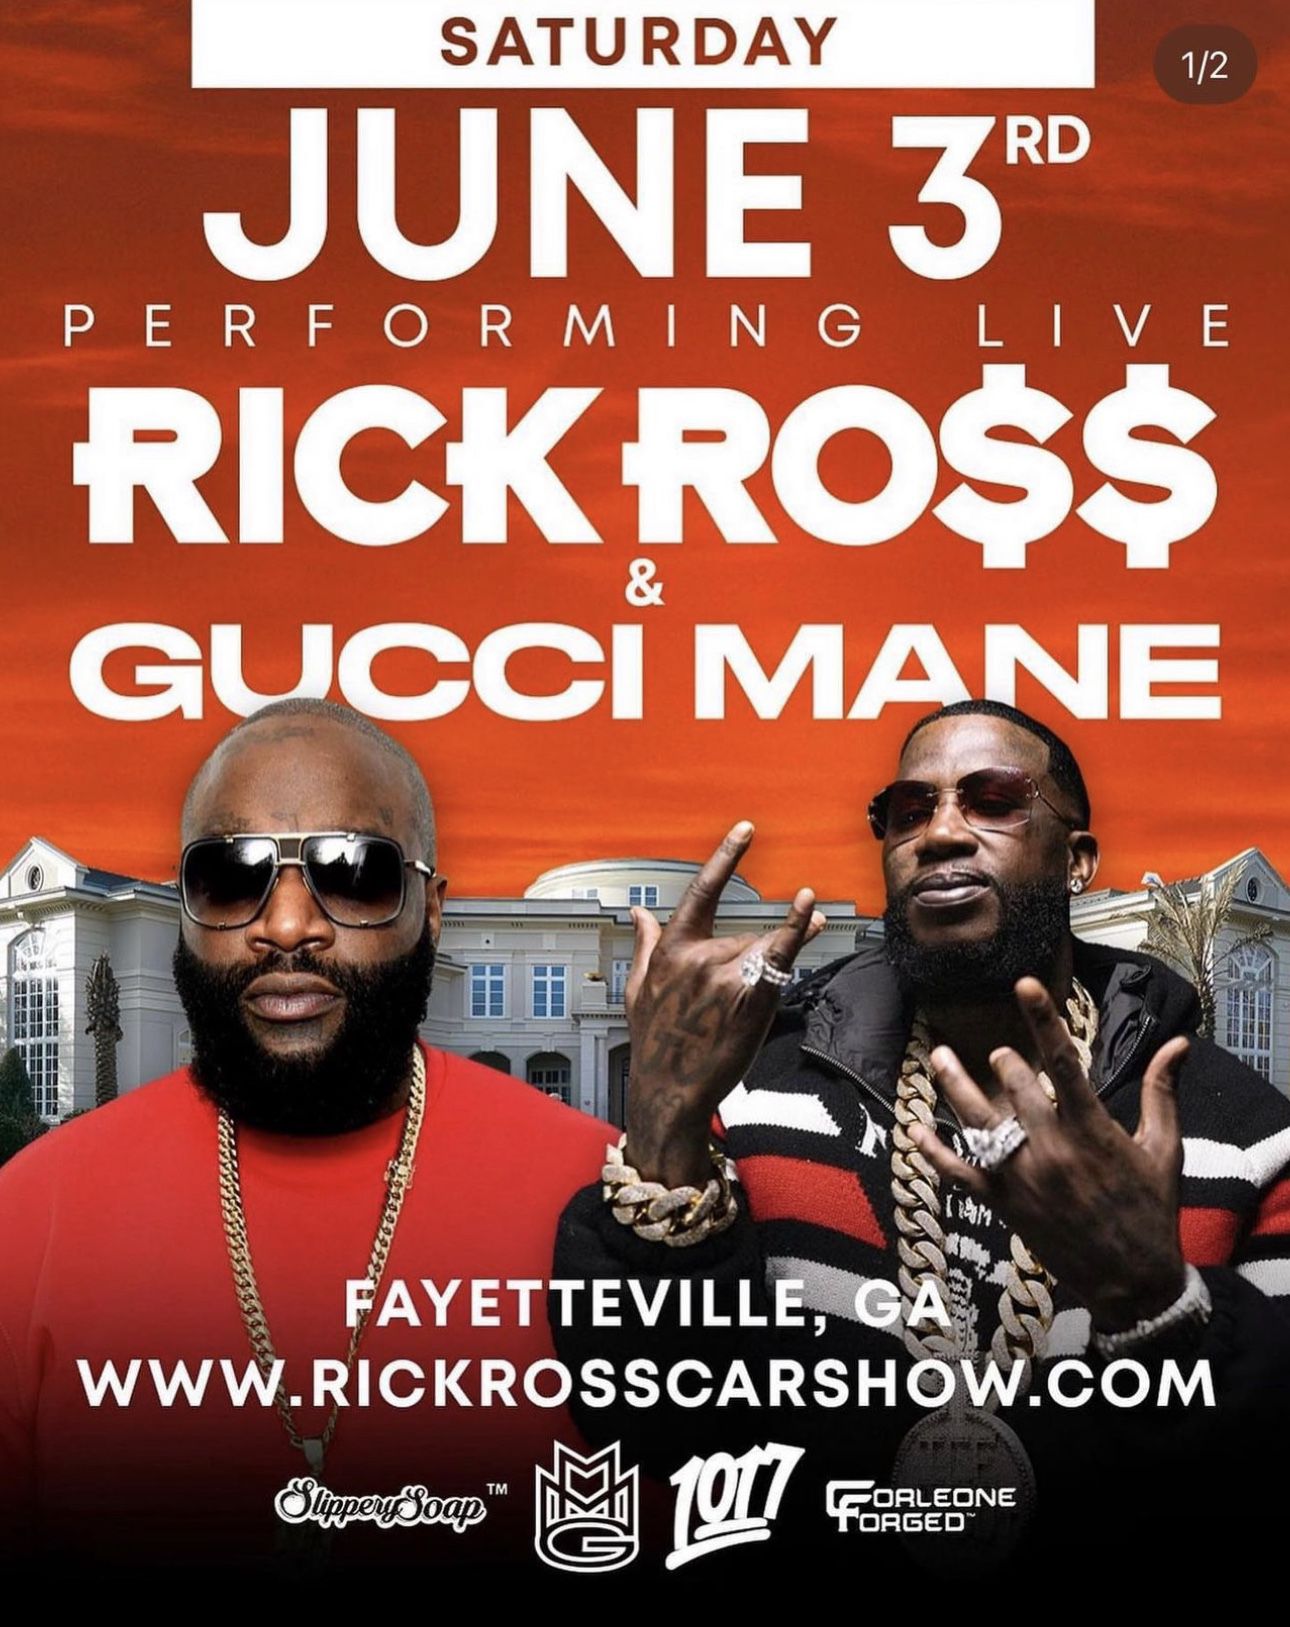 Rick Ross Car Show Tickets 